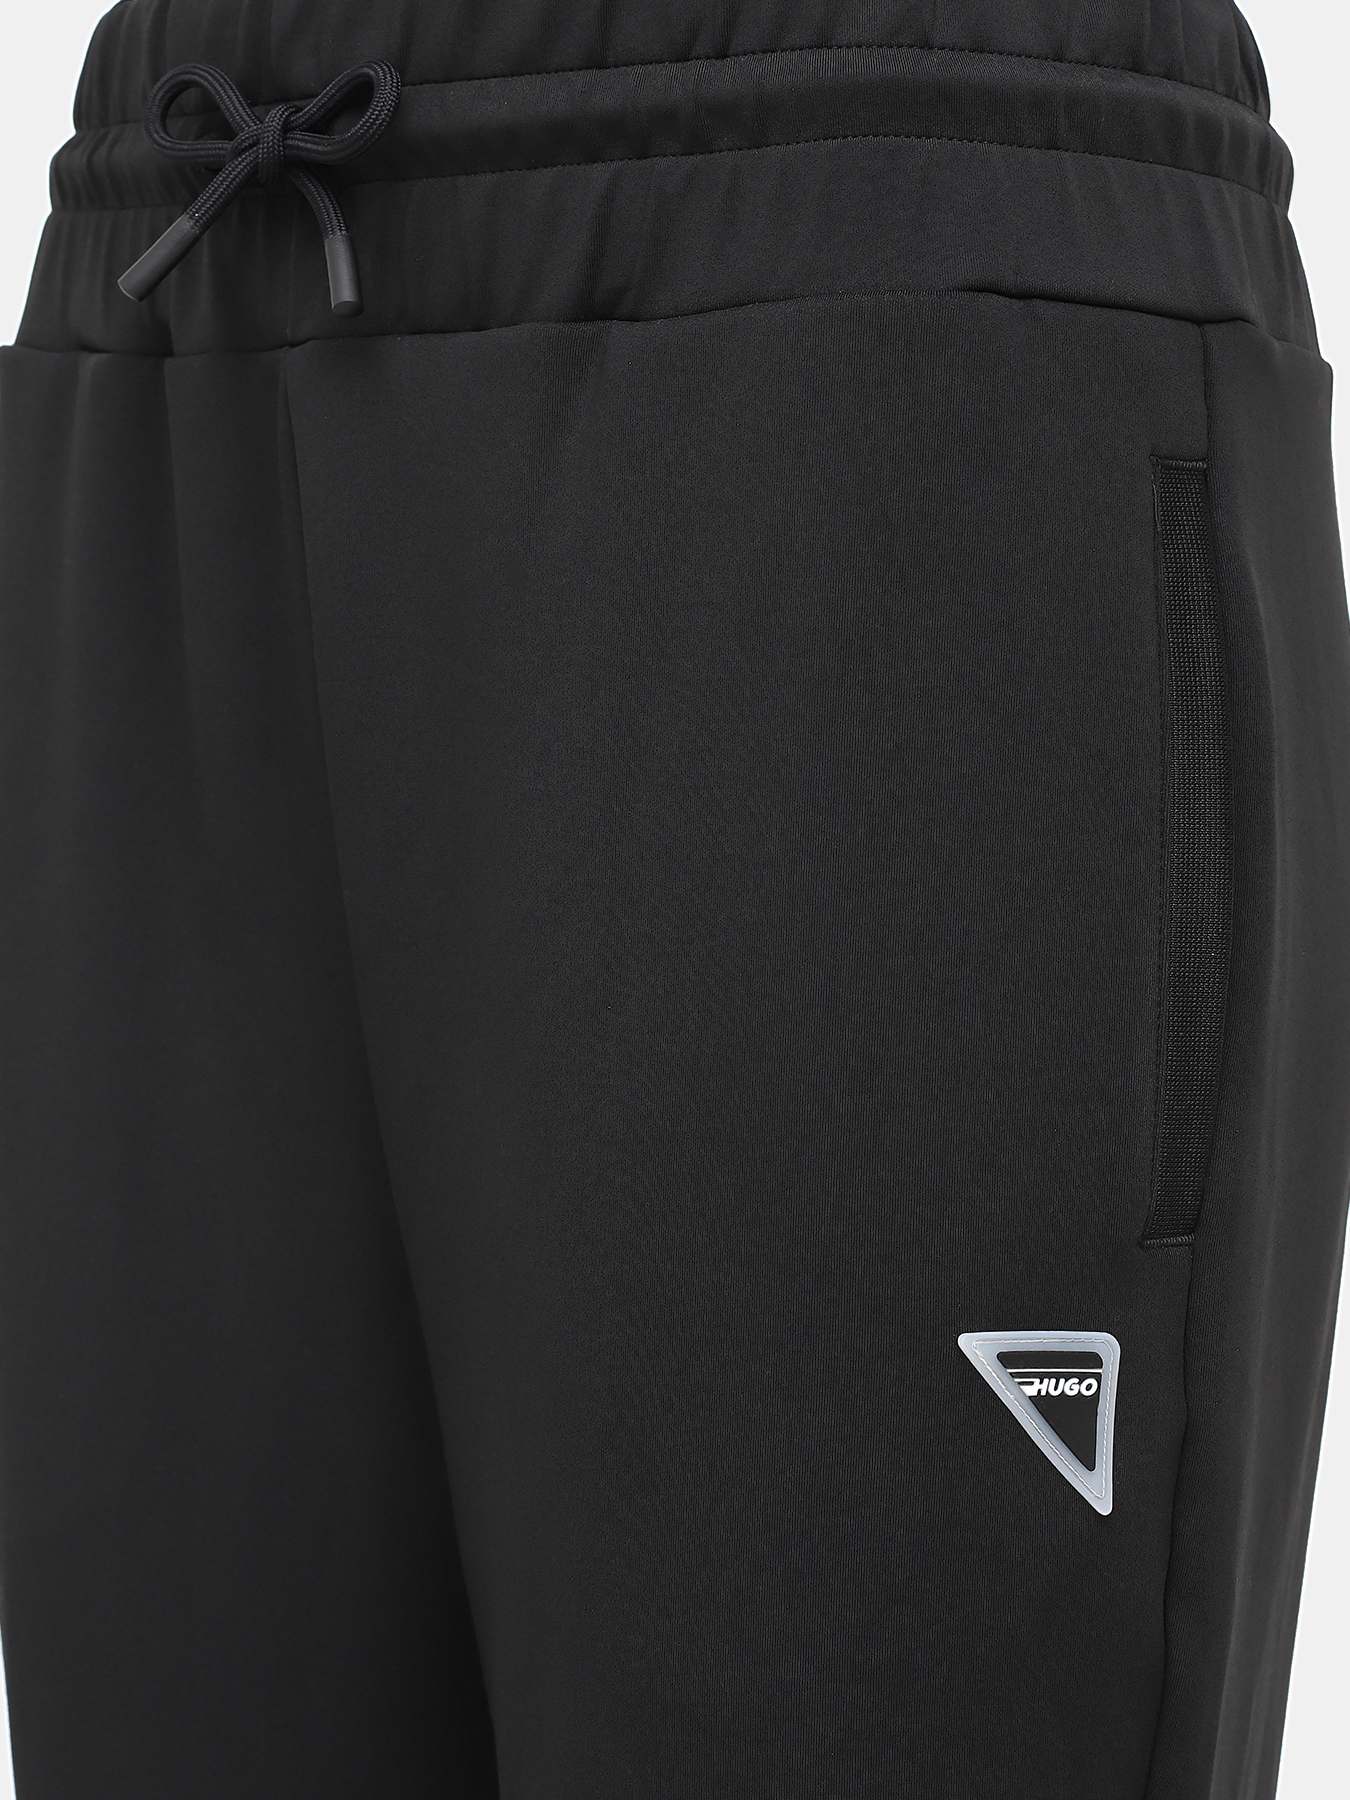 Спортивные брюки Narcy HUGO 420599-044, цвет черный, размер 46-48 - фото 3